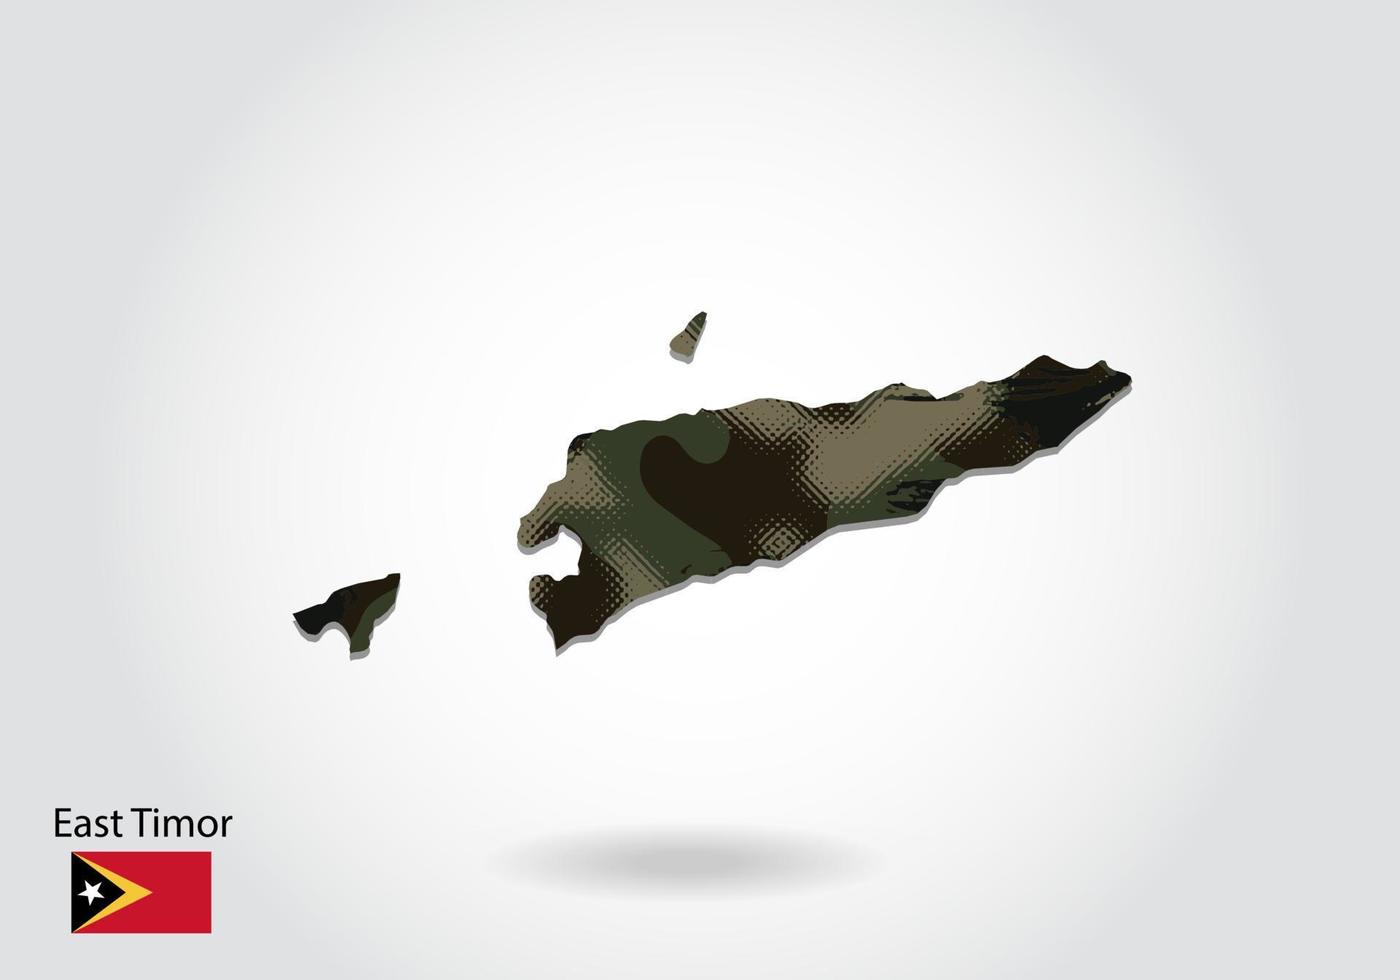 carte du timor oriental avec motif camouflage, forêt - texture verte sur la carte. concept militaire pour l'armée, le soldat et la guerre. armoiries, drapeau. vecteur